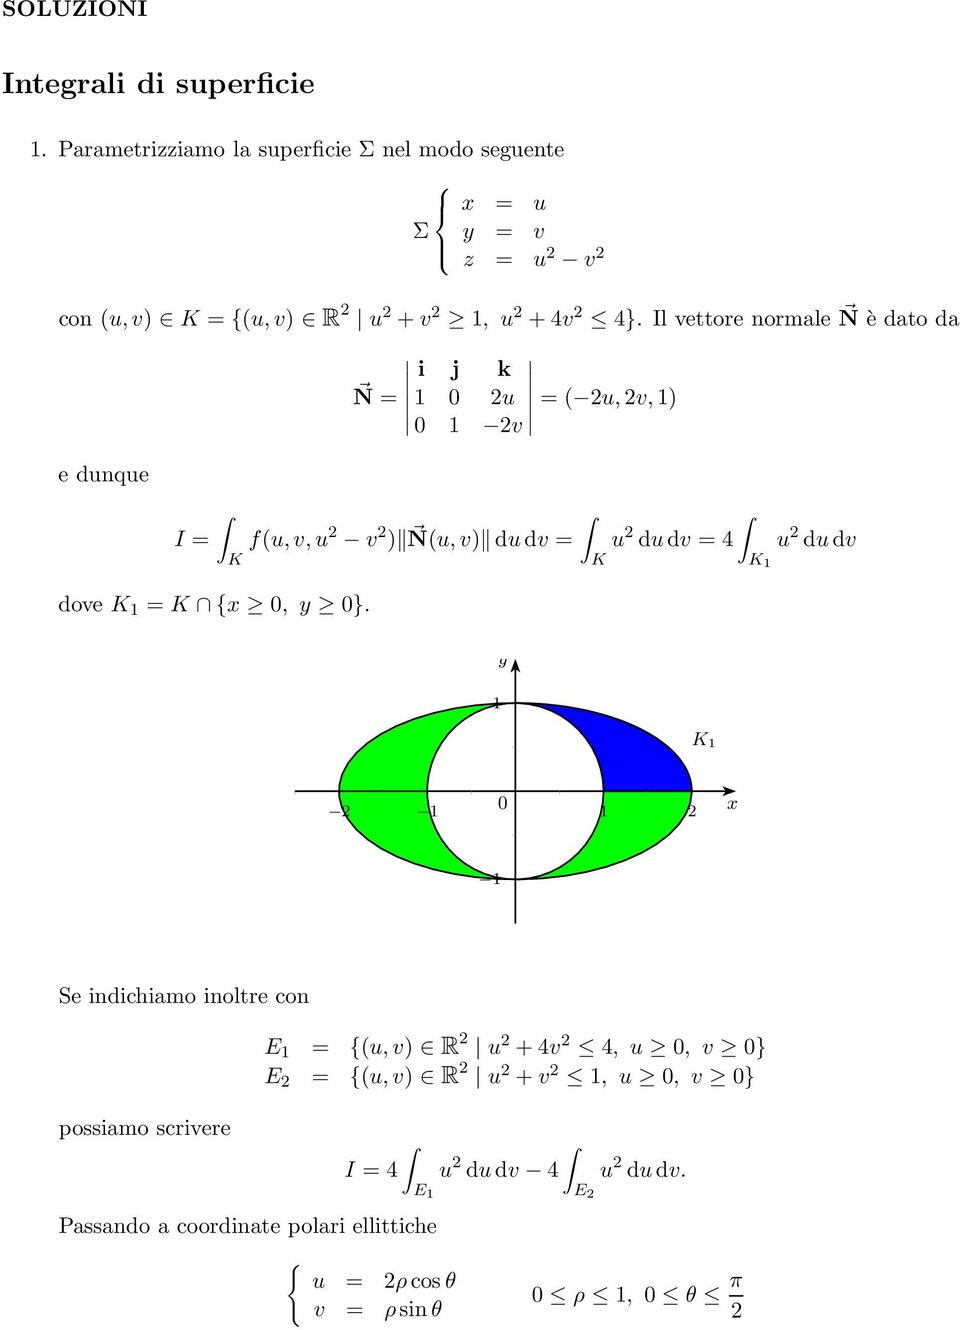 Il vettore normale N è dato da i j k N = u = ( u,v,) v e dunque I = f(u,v,u v ) N(u,v) dudv = u dudv = 4 u dudv dove